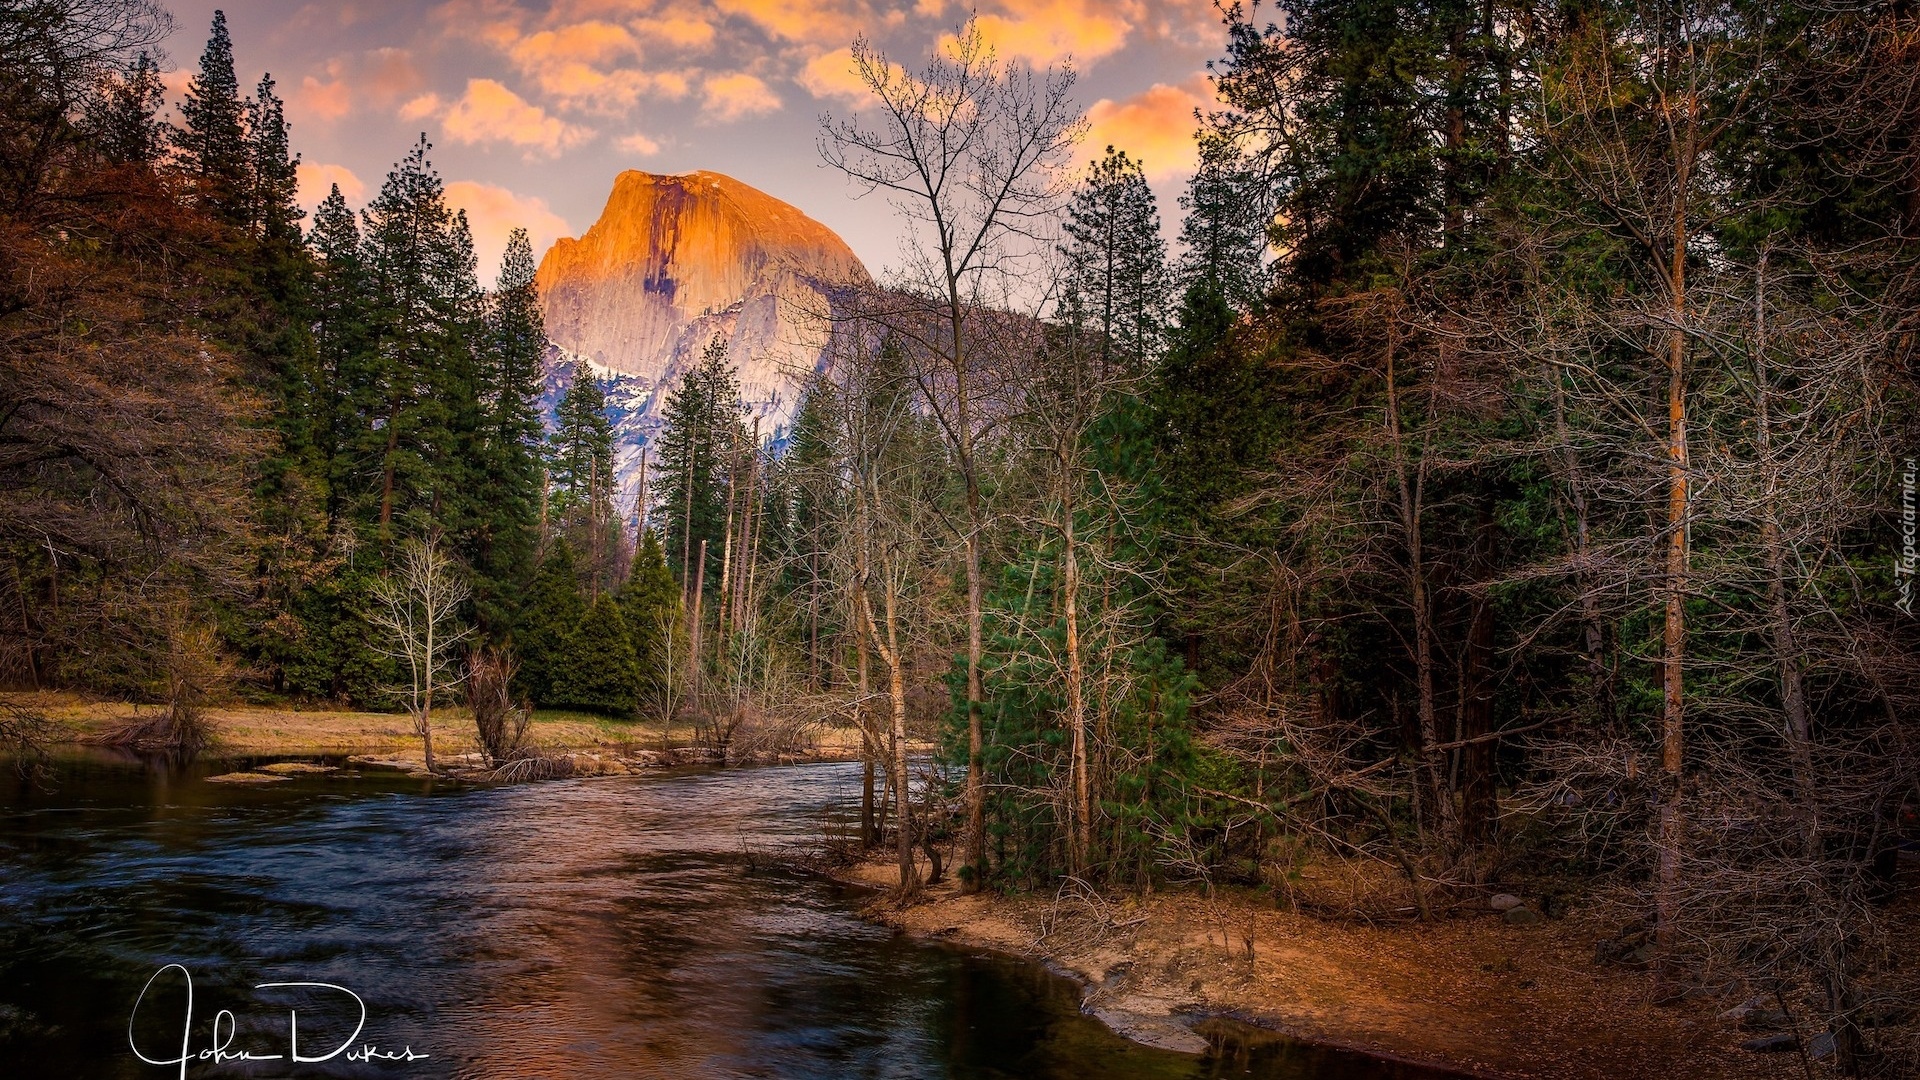 Stany Zjednoczone, Kalifornia, Park Narodowy Yosemite, Góra, Half Dome, Rzeka, Merced River, Drzewa